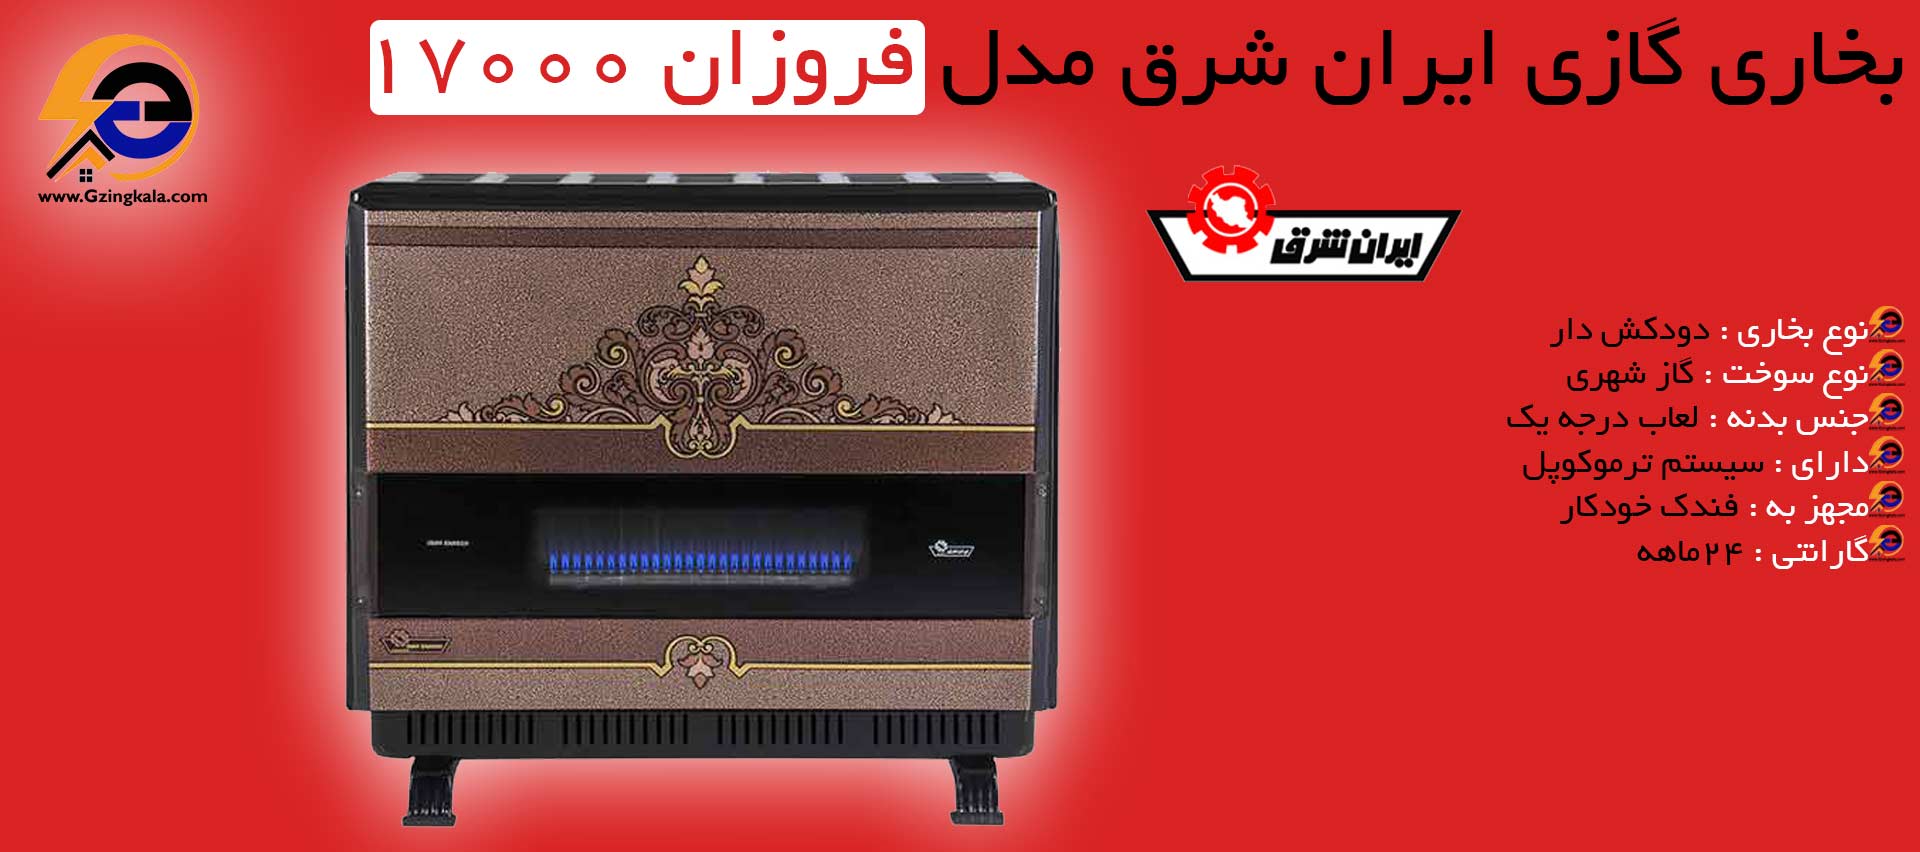 بخاری گازی ایران شرق مدل فروزان 17000